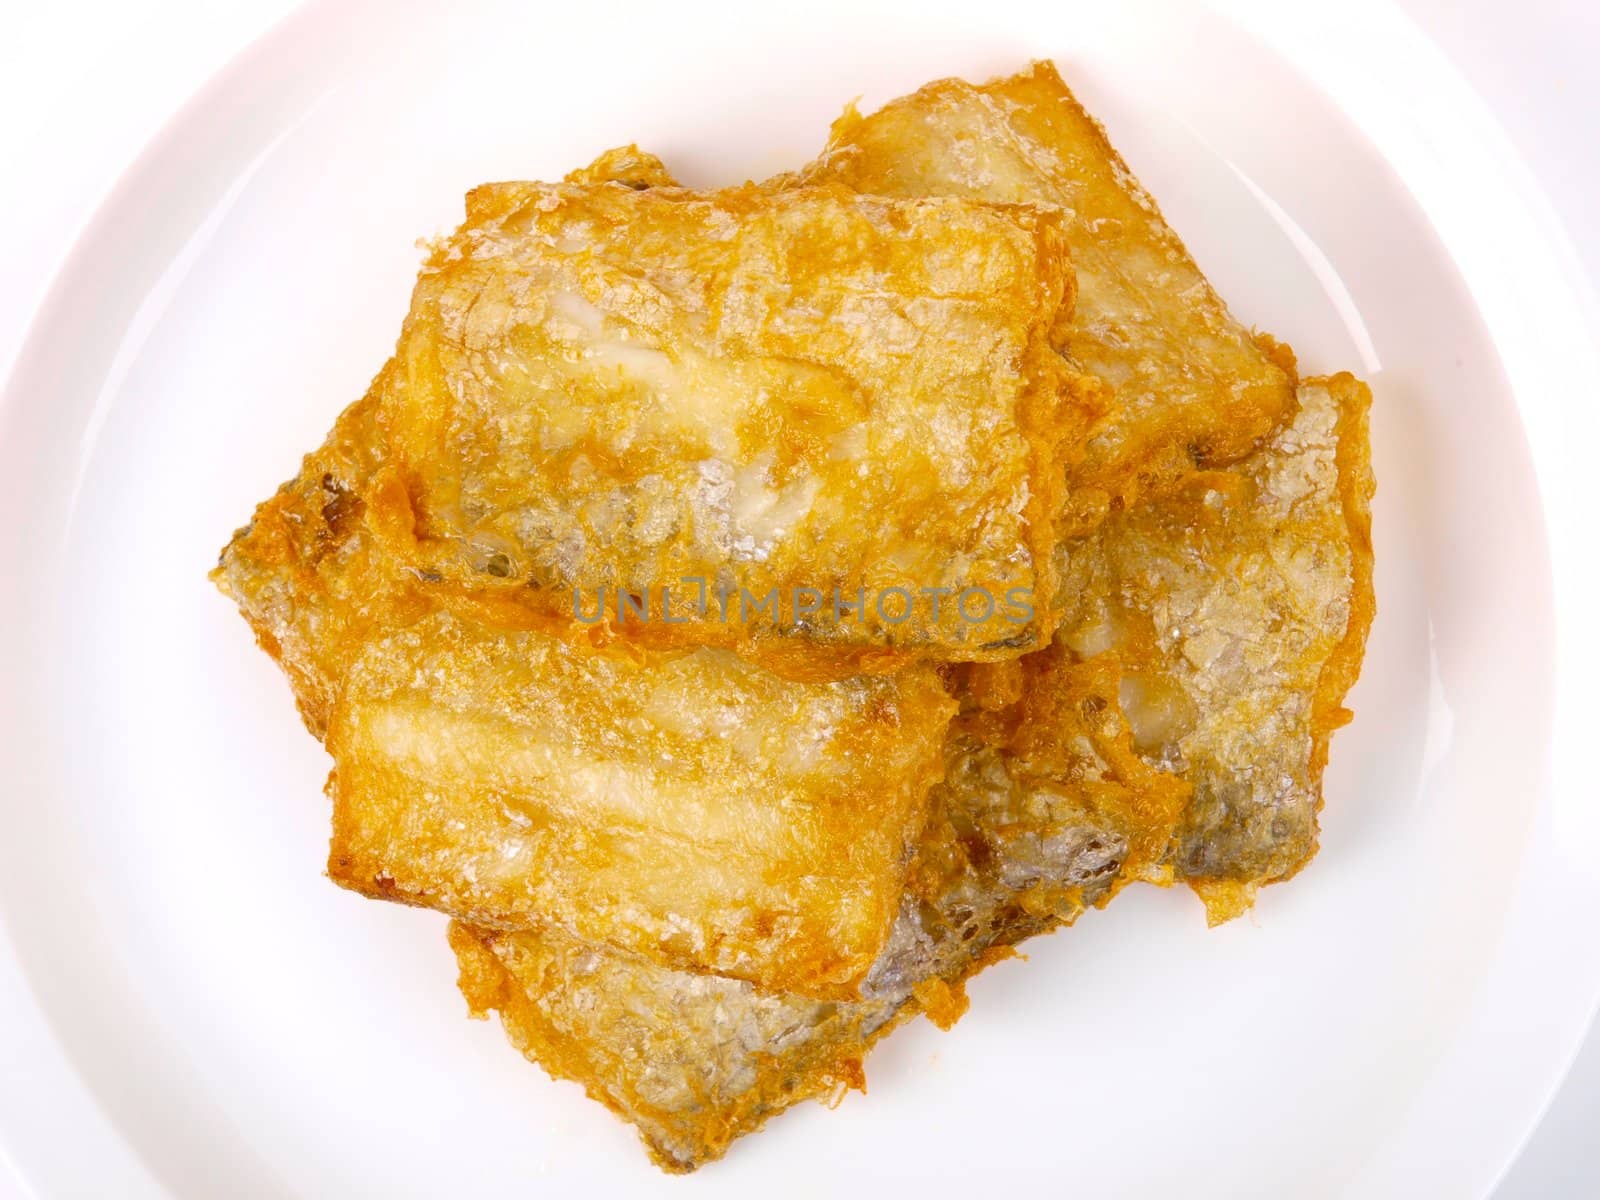 Fresh fried Conger fish